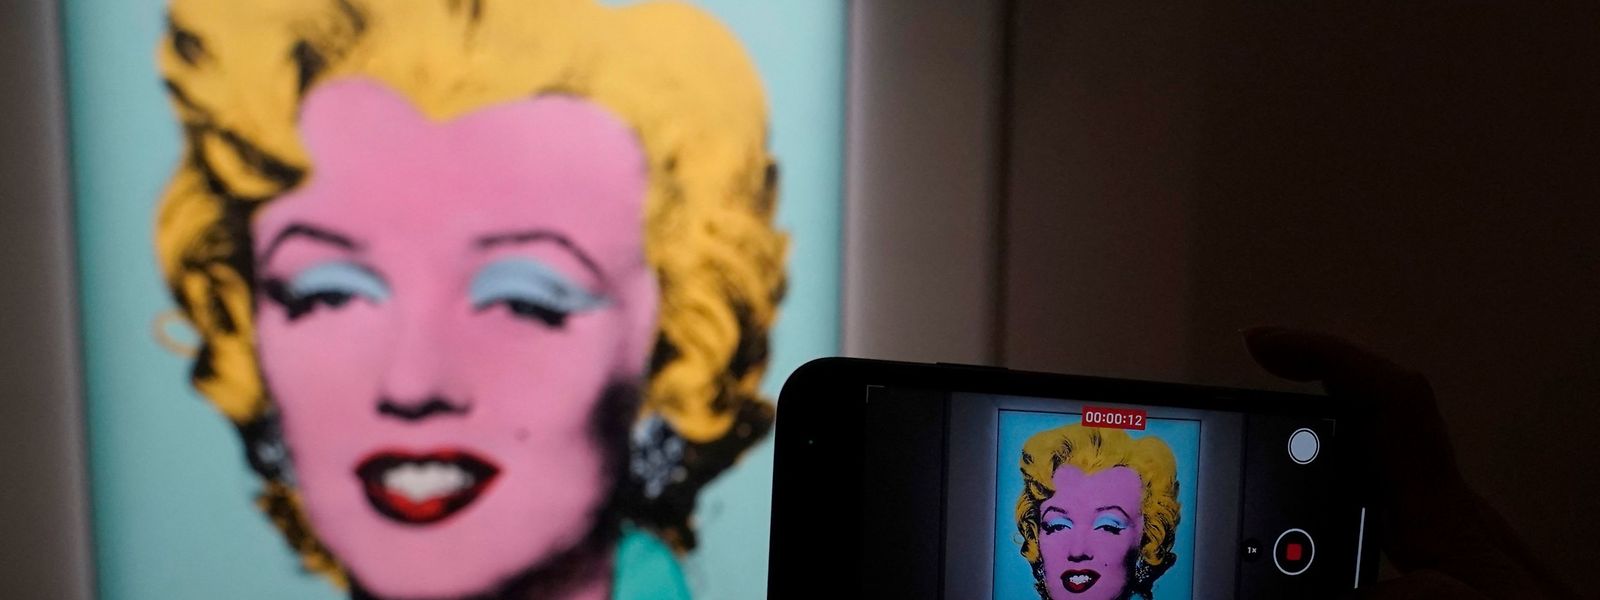 Selon plusieurs spécialistes des enchères présents sur place, l’offre d’achat du portrait de Marilyn Monroe est venue du marchand d'art américain Larry Gagosian.